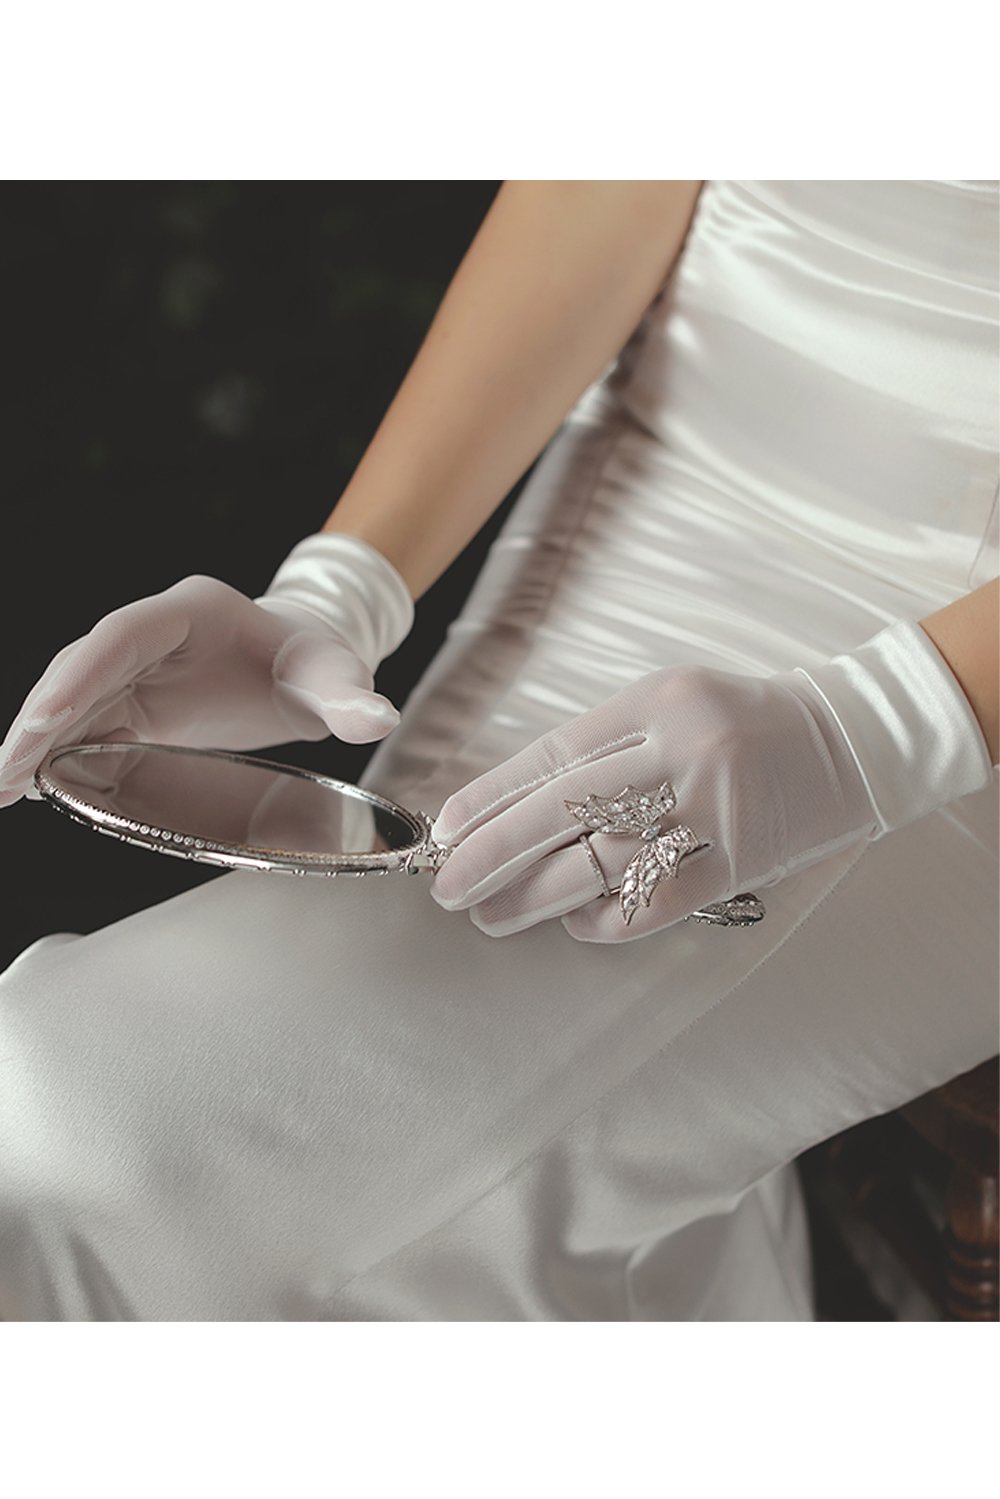 Fingertips Wrist Length Satin Wedding Gloves CD0080